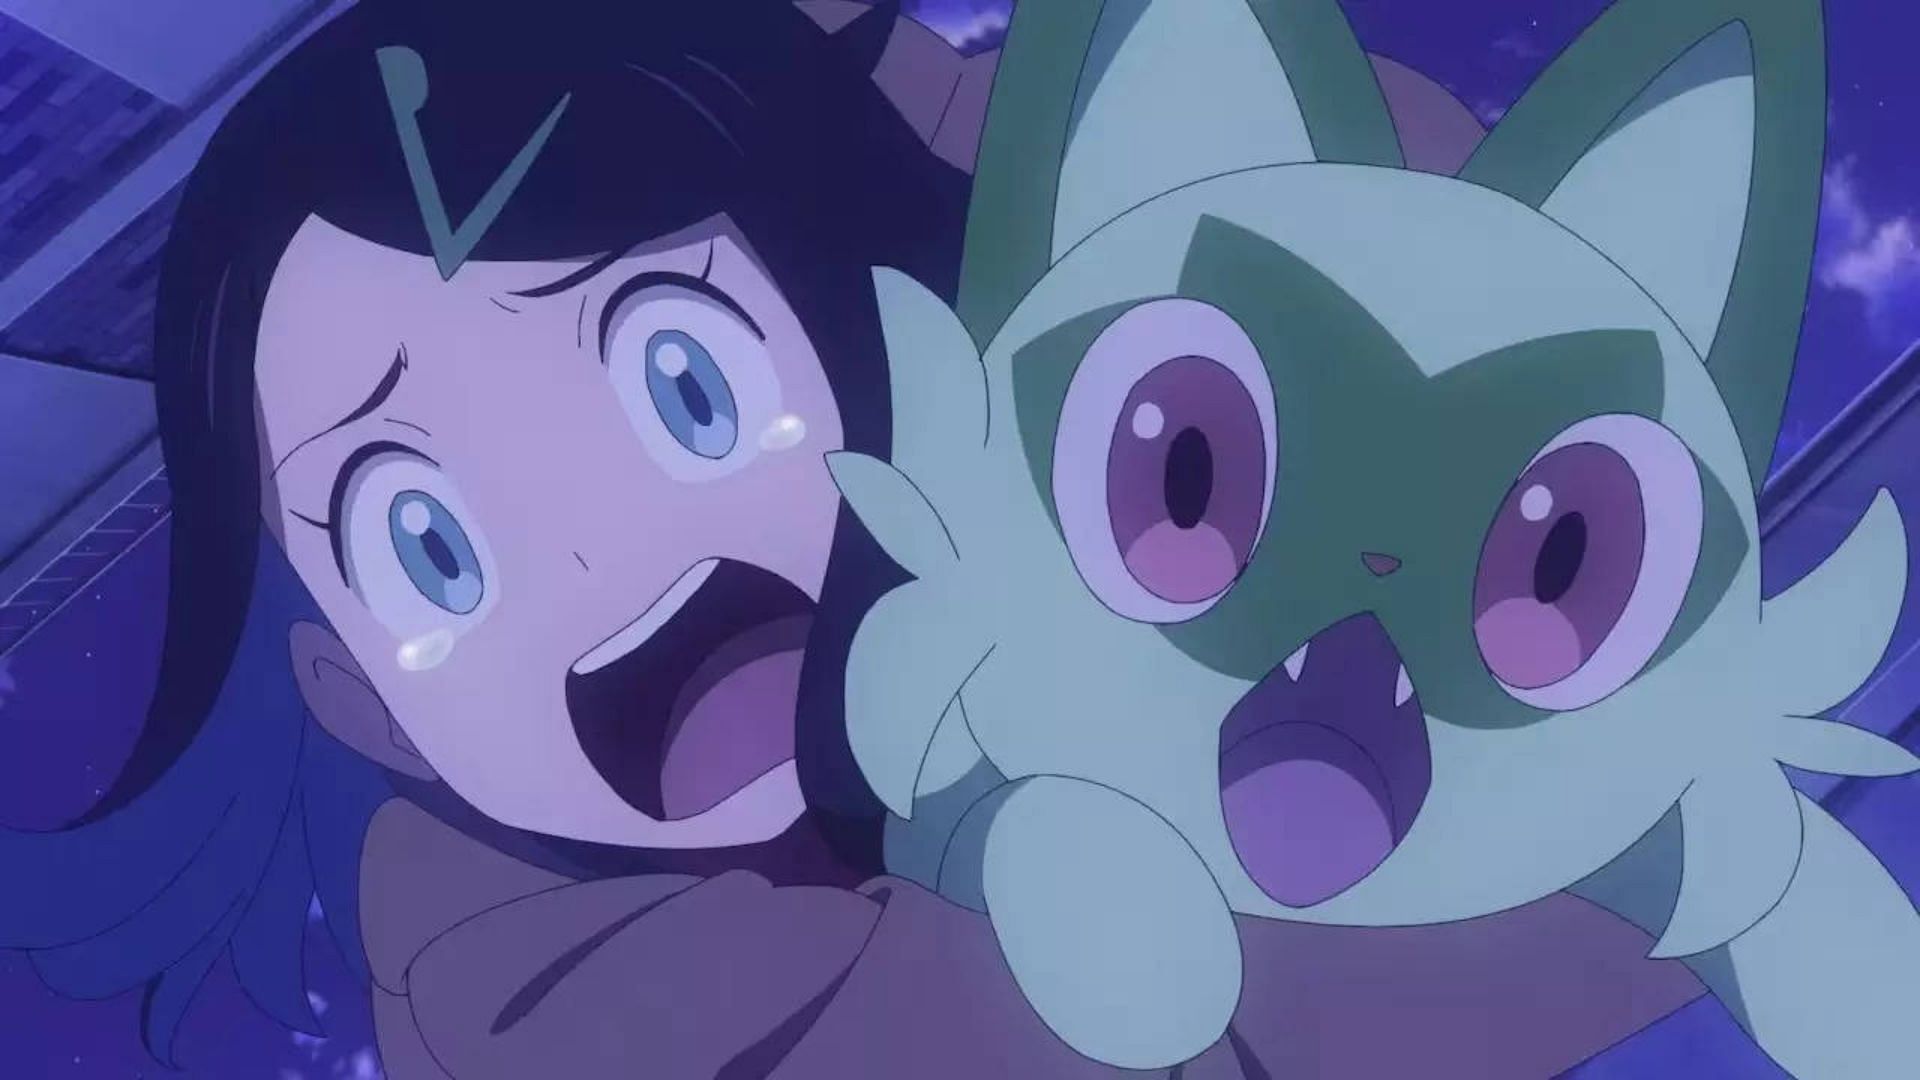 Pokémon Horizons: The Series tem adaptação para mangá confirmada